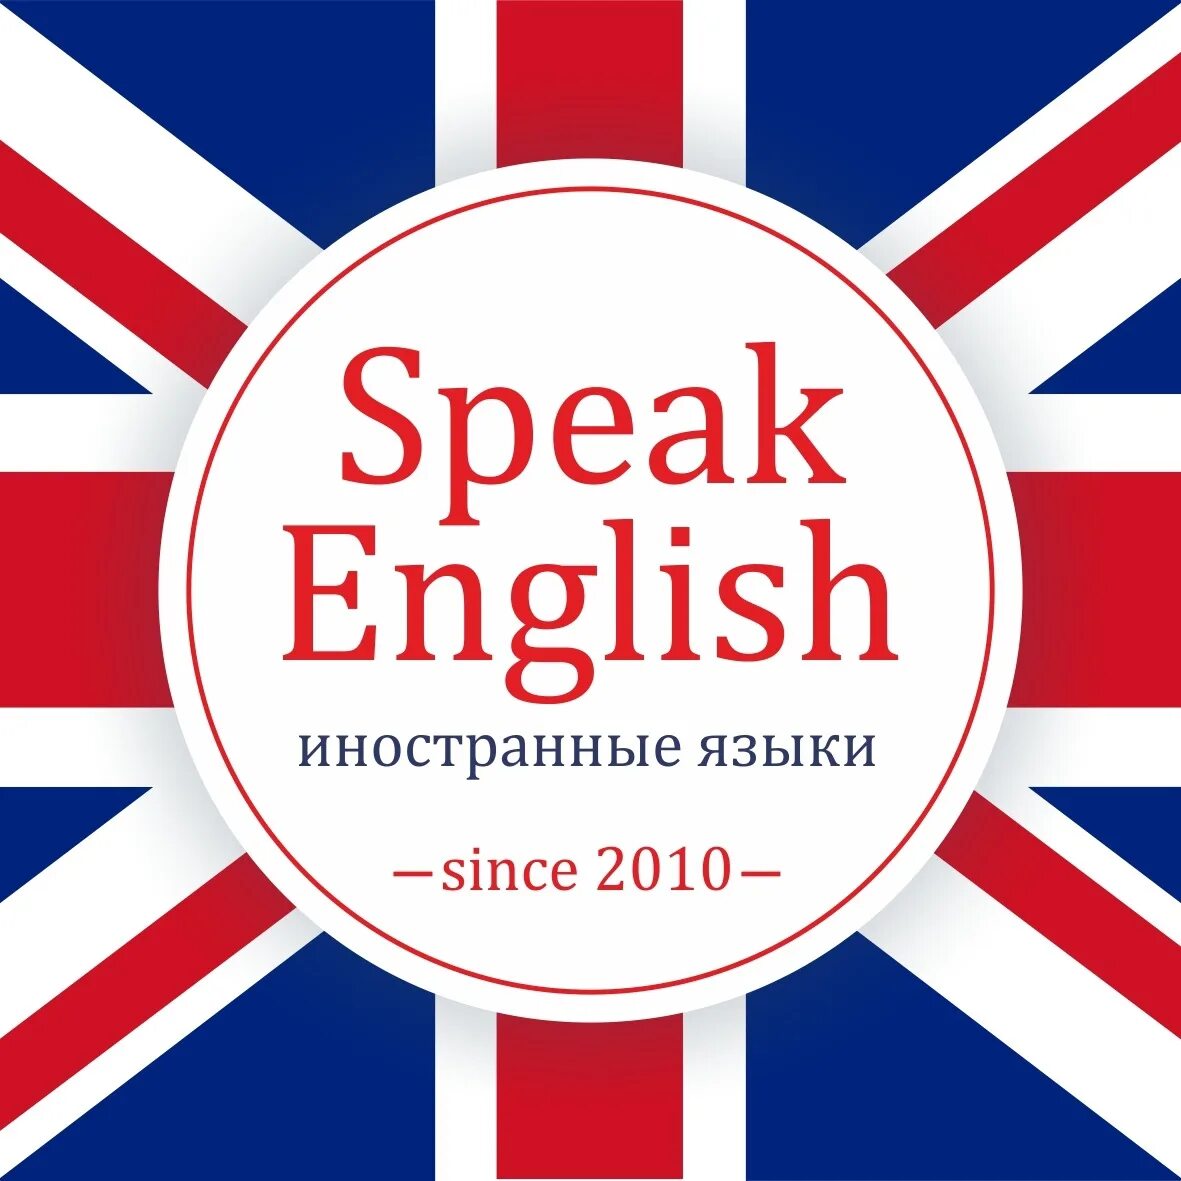 Инглиш мен ин. Speak English. Английский для иностранцев. Языковая школа Рязань. Ин Инглиш плиз.